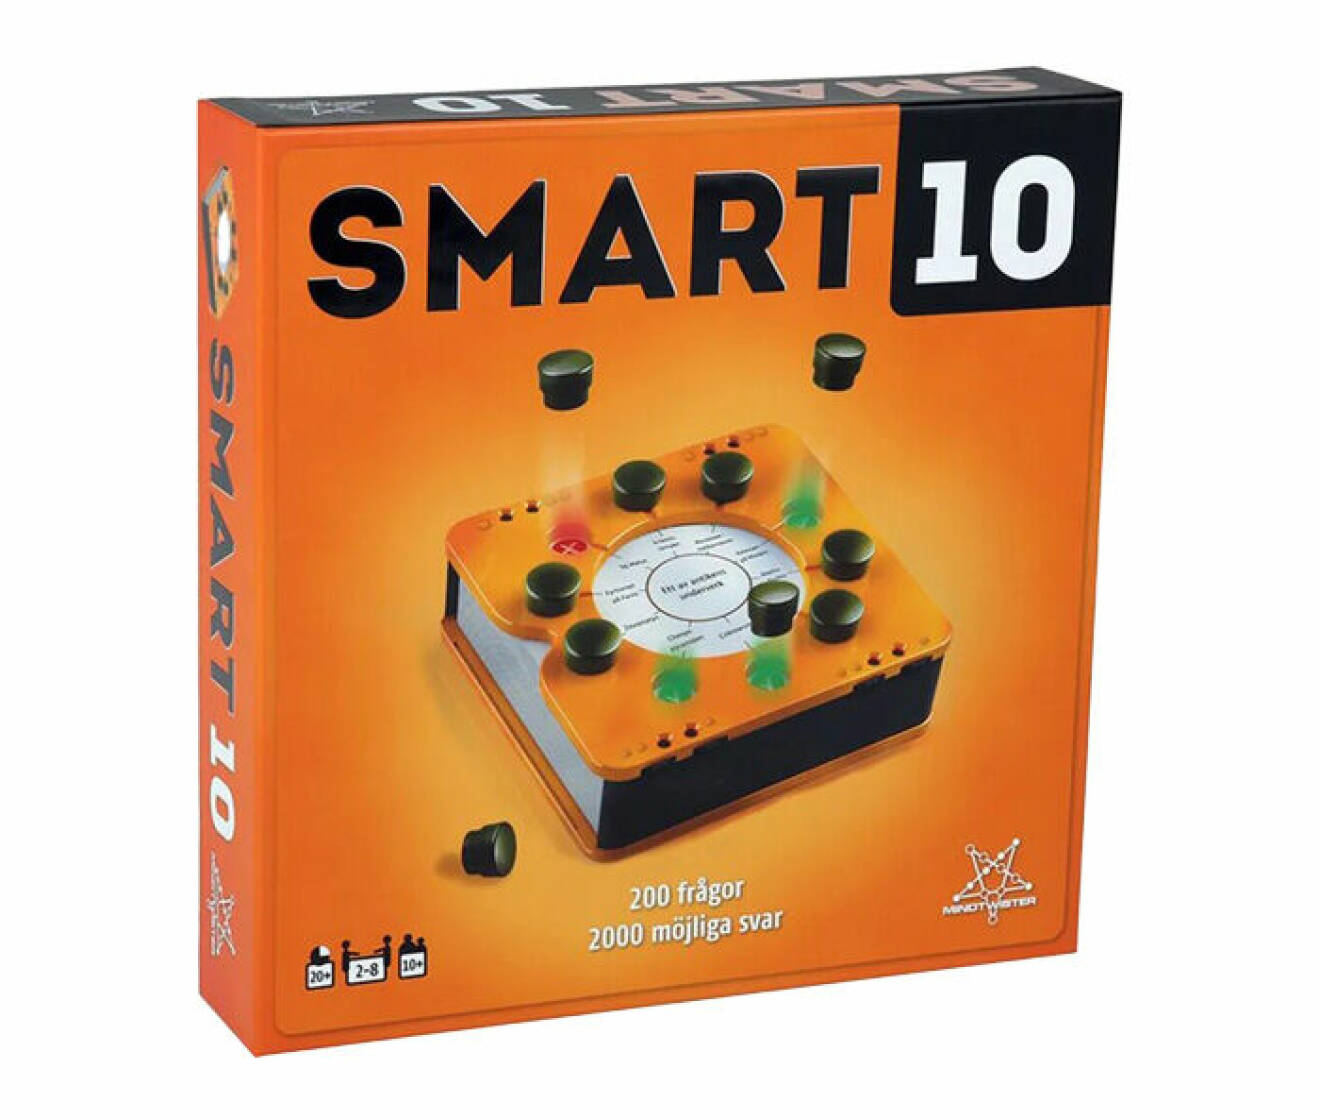 frågespel för vuxna som heter Smart10 och som är framtaget av Martinex